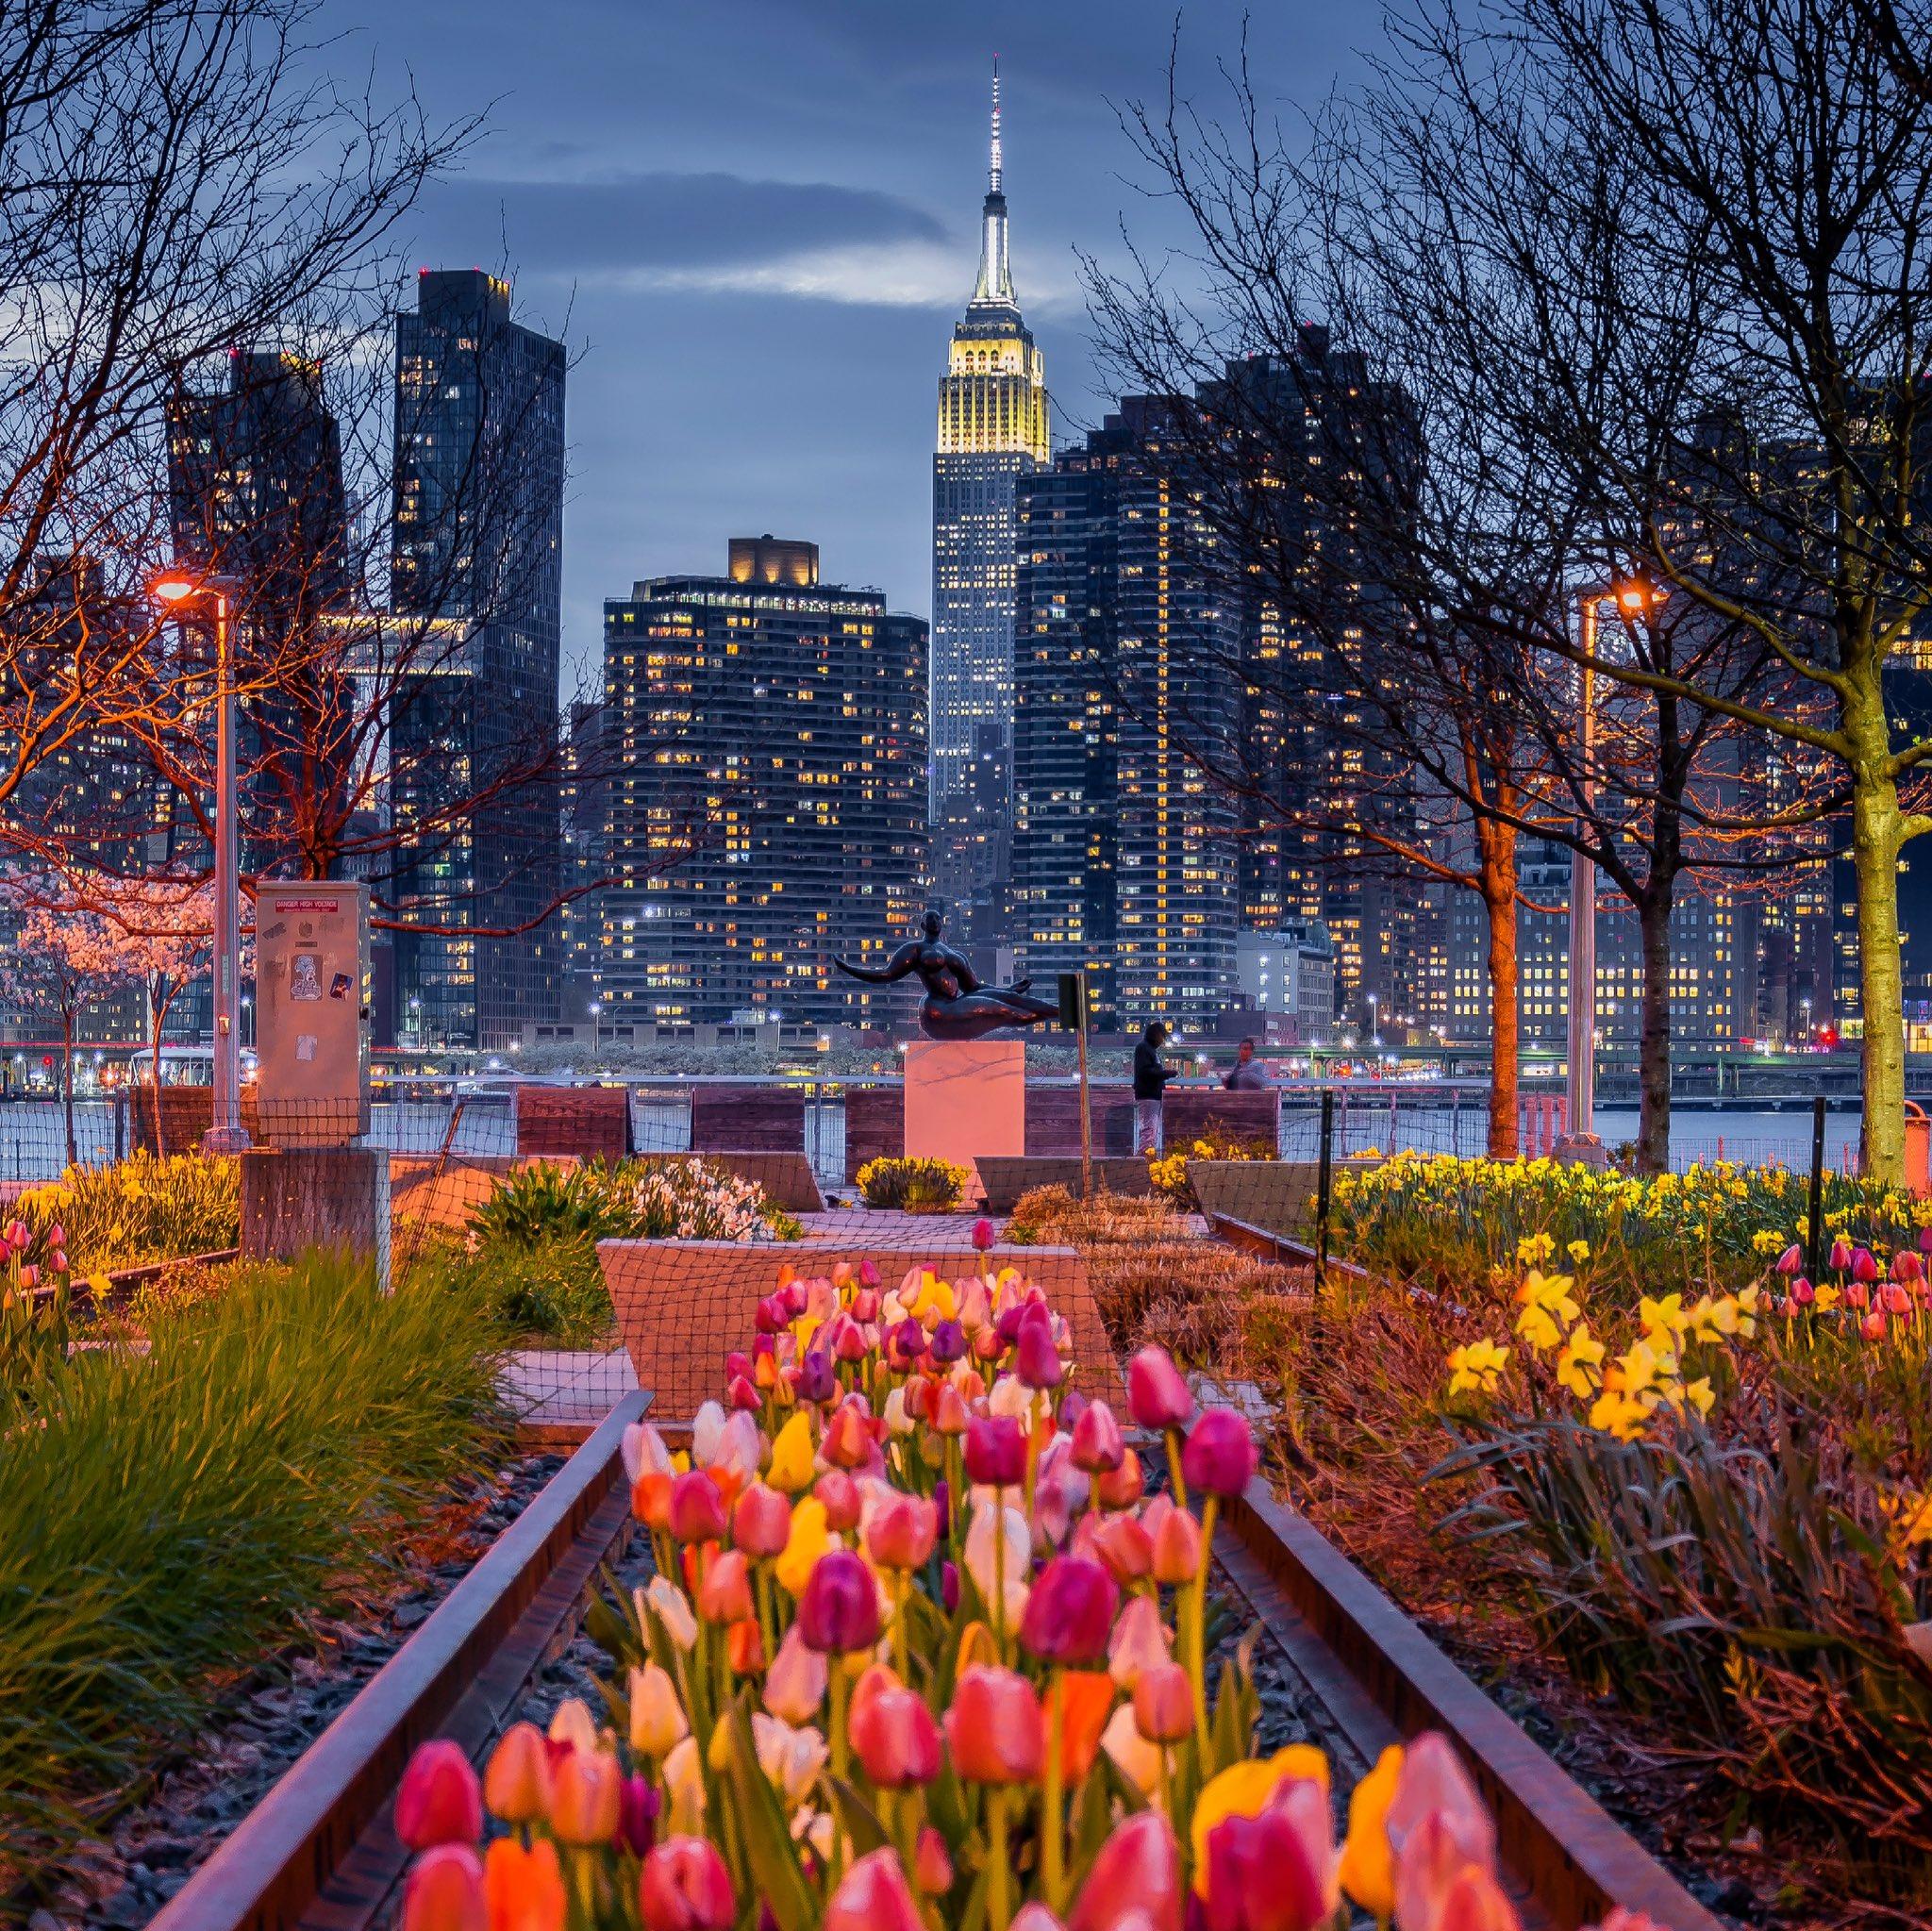 Noel Y Calingasan NYC on New York in bloom Whats